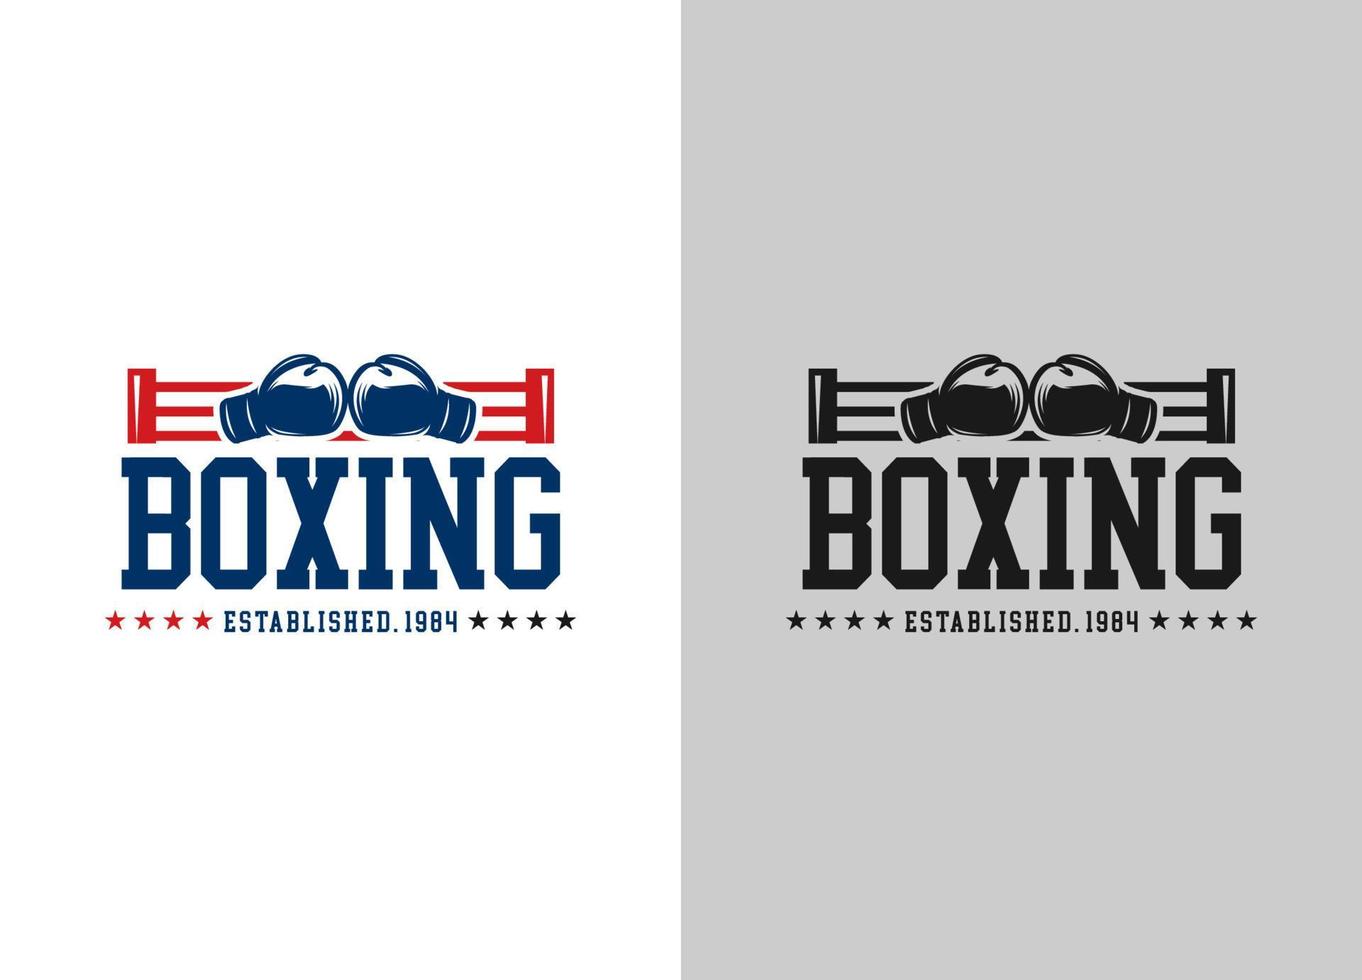 modelo de logotipo de boxe. elementos de design relacionados ao boxe para estampas, logotipos, cartazes. ilustração em vetor vintage. eps 10